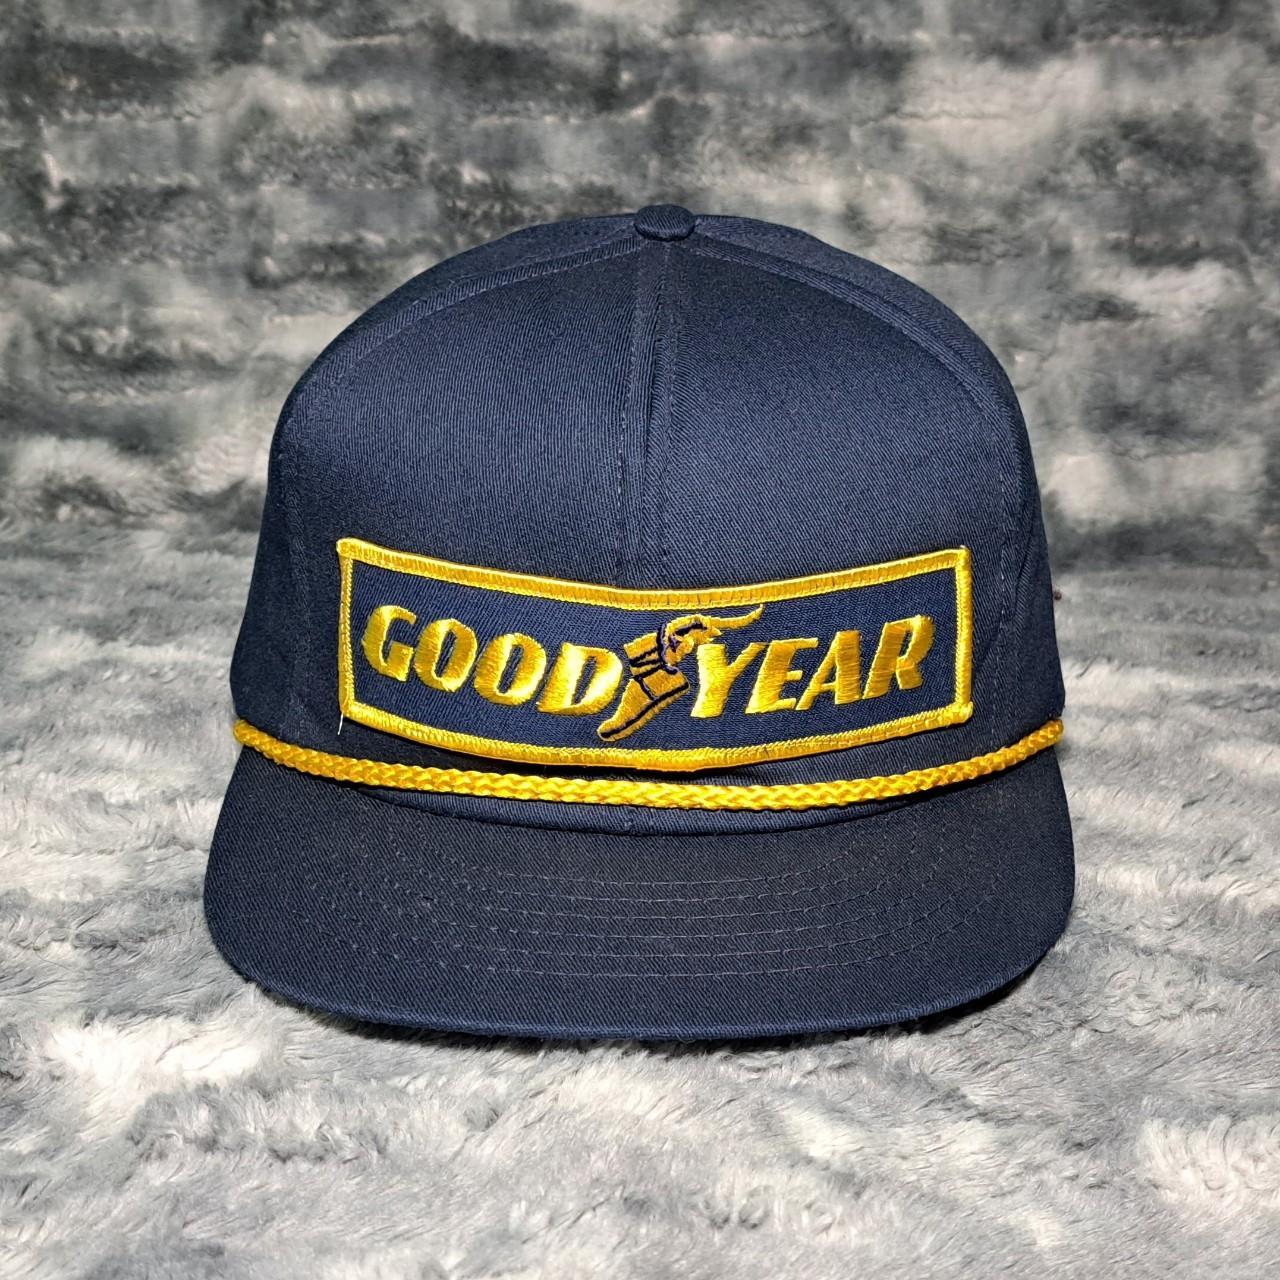 Vintage Good Year Snapback – eightonethree.